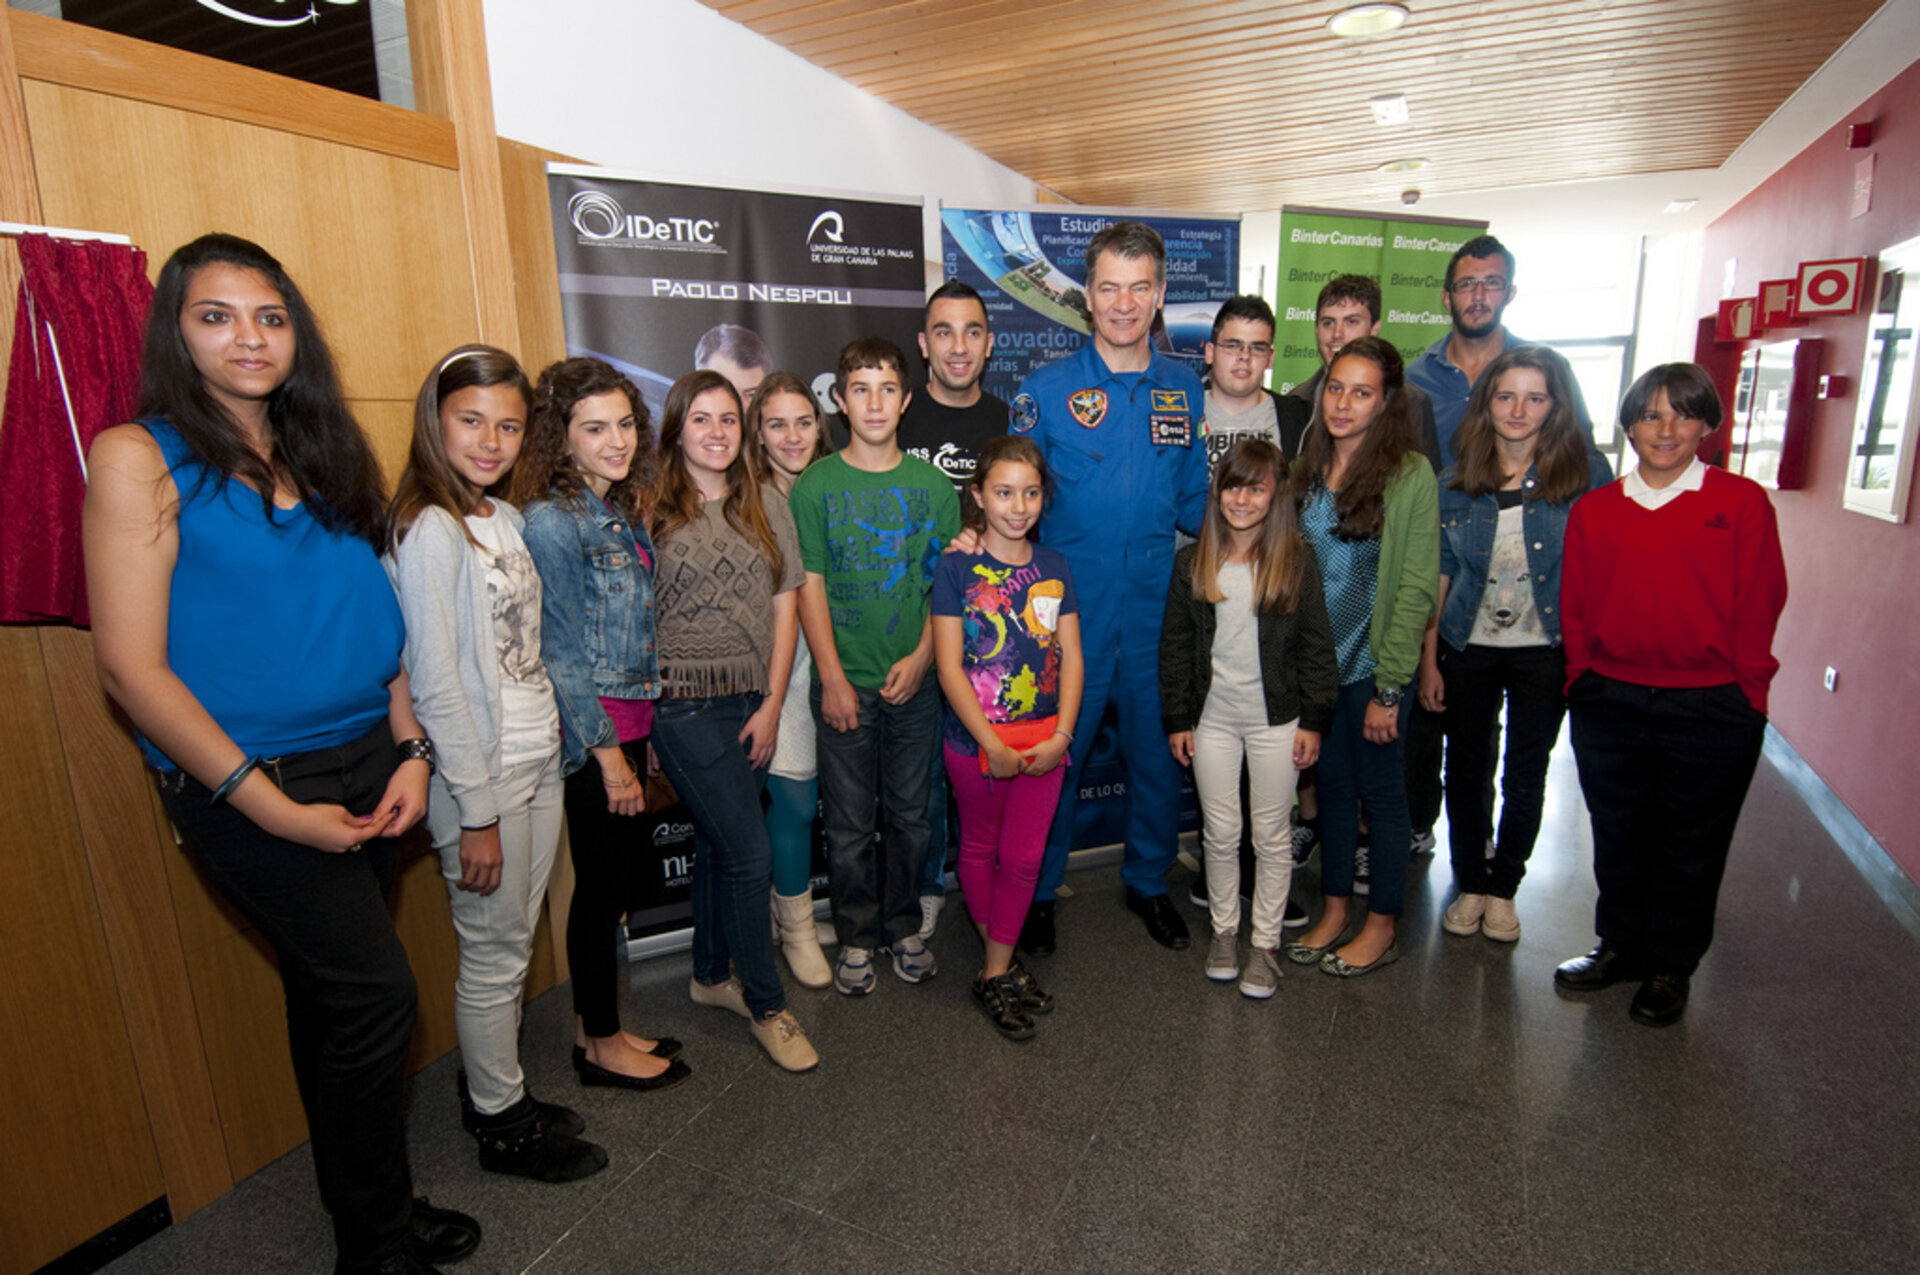 Paolo Nespoli con los estudiantes que participaron en la conexión con la ISS hace un año